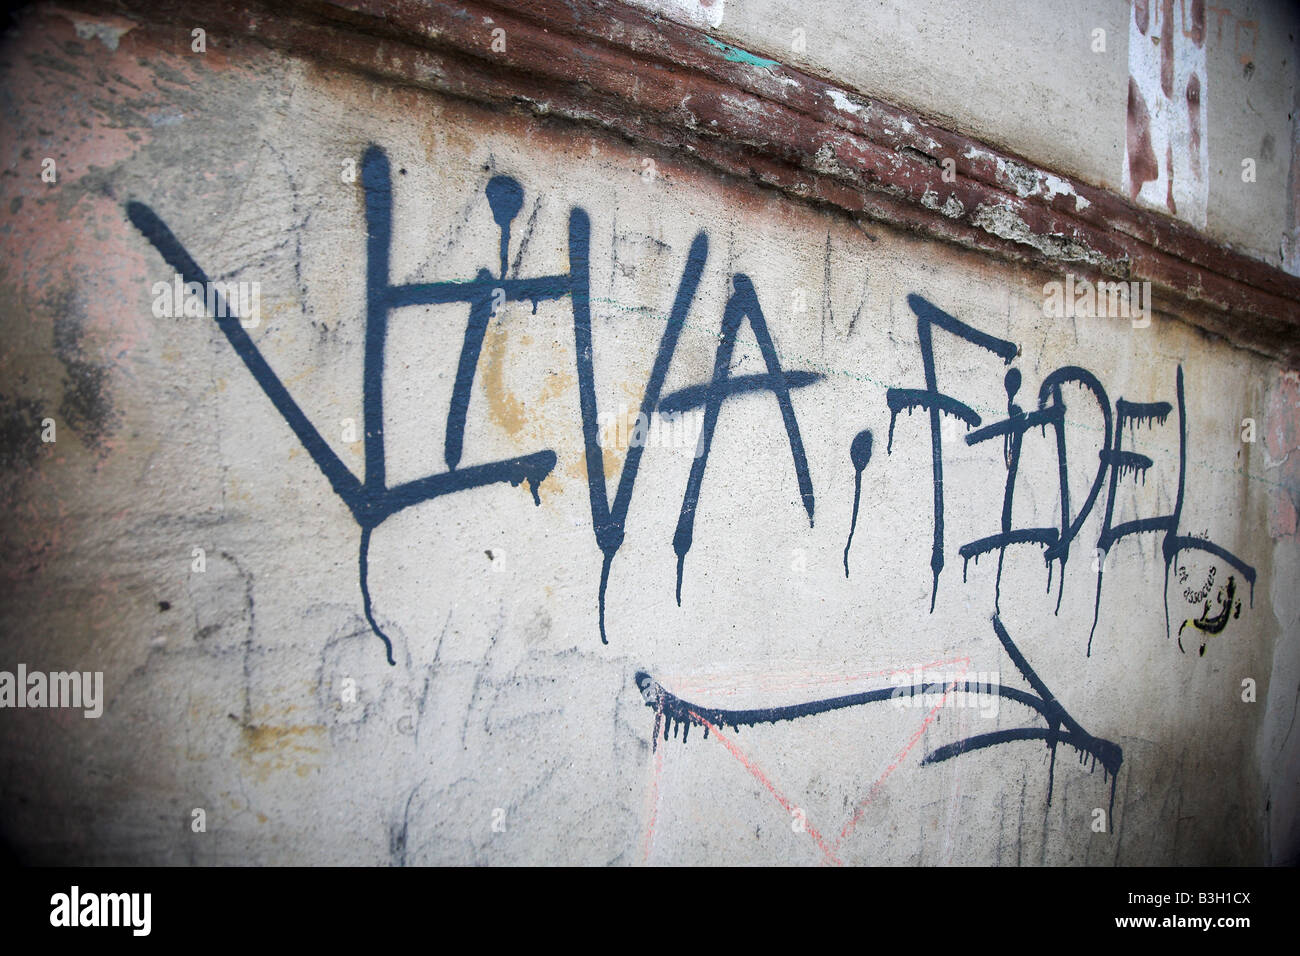 Viva Fidel is graffitied on a wall in old Havana in Cuba. Stock Photo